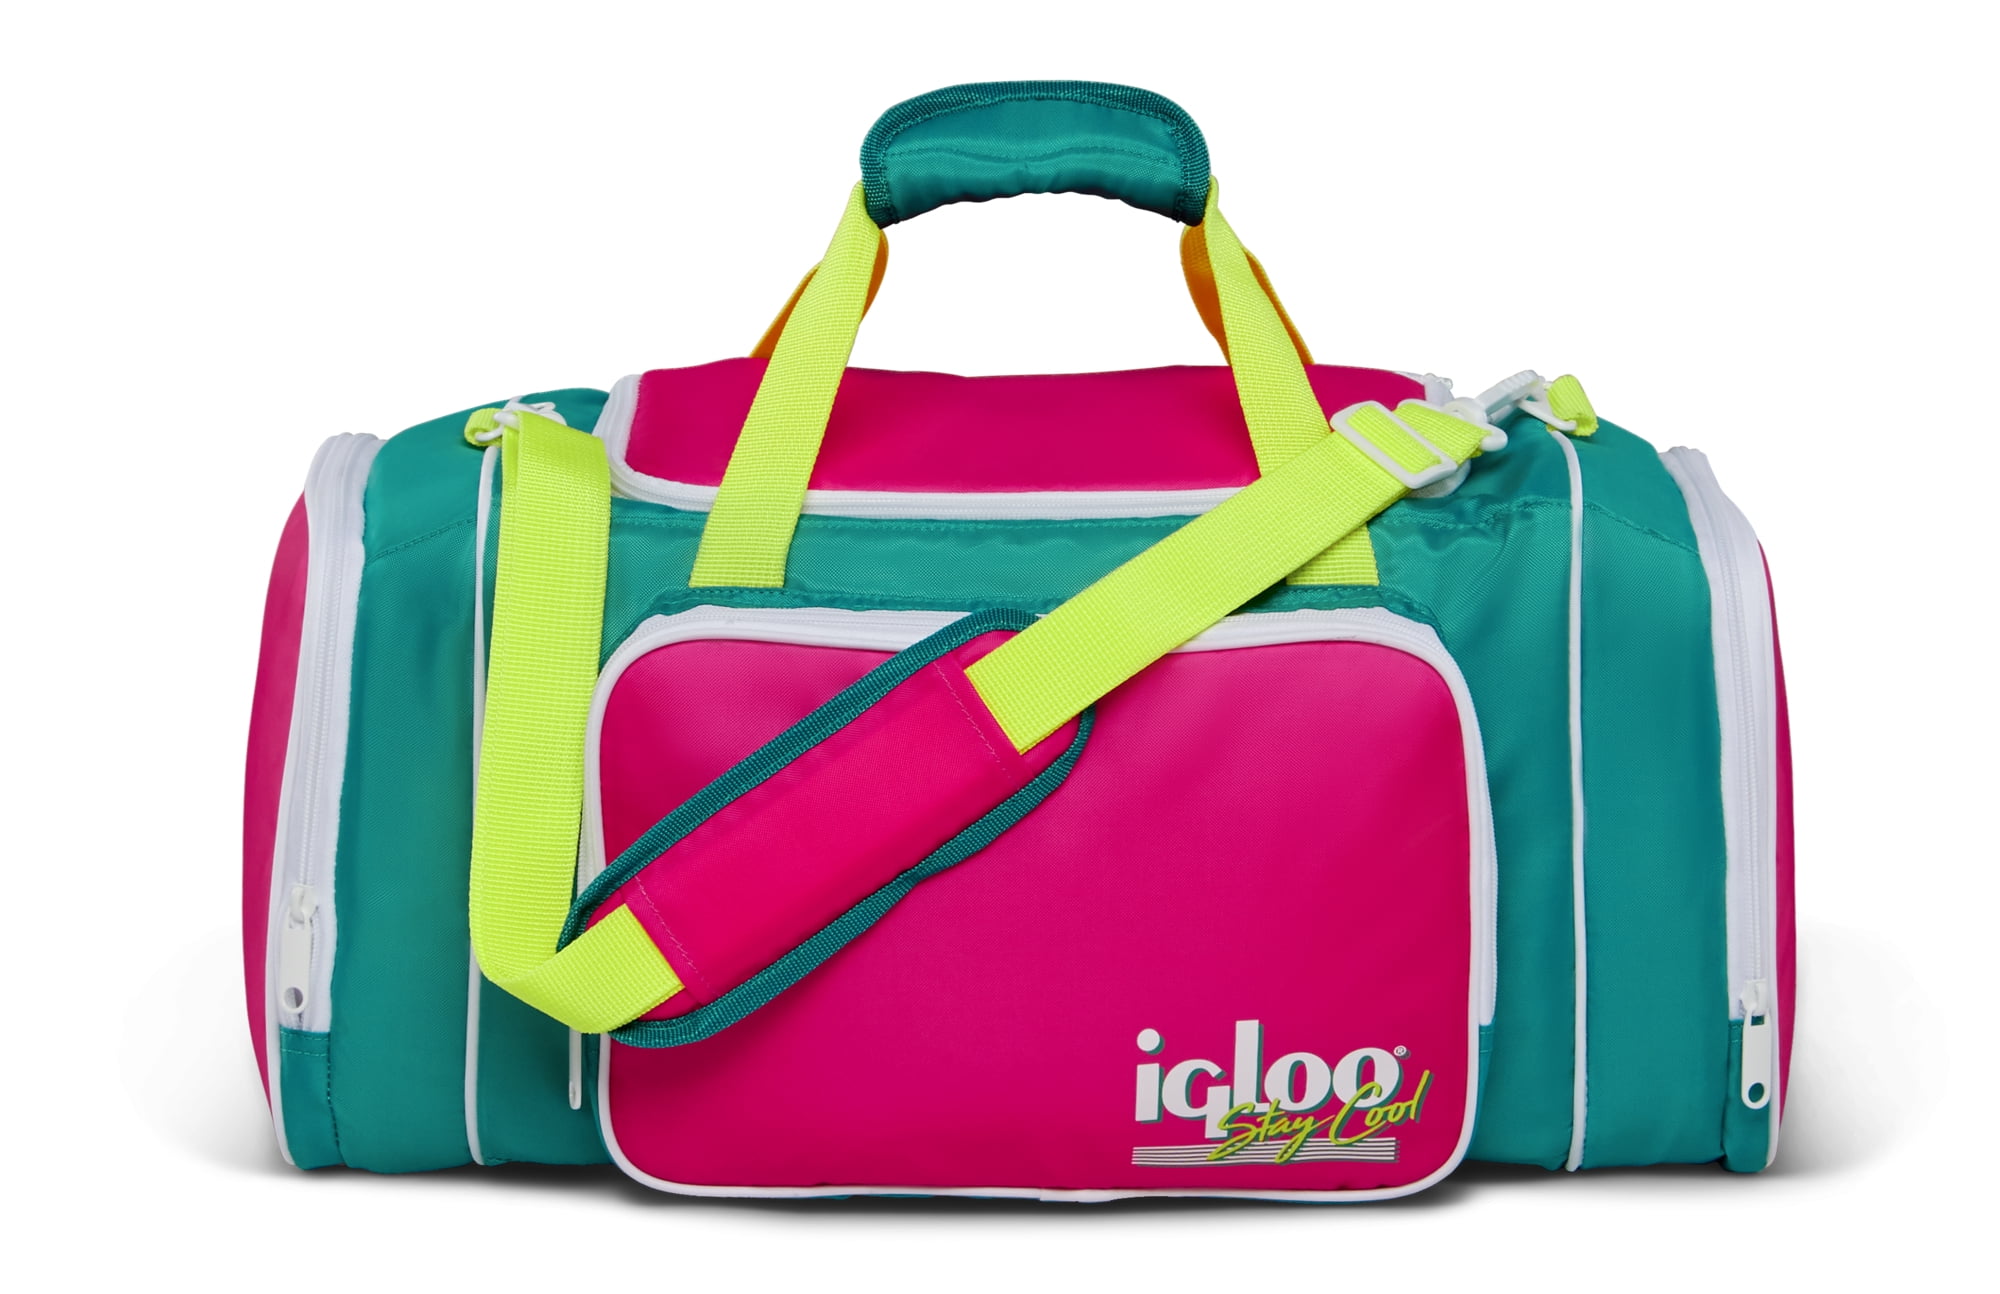 Igloo 24 cans Retro Duffel Bag Soft Cooler, Jade - Walmart.com